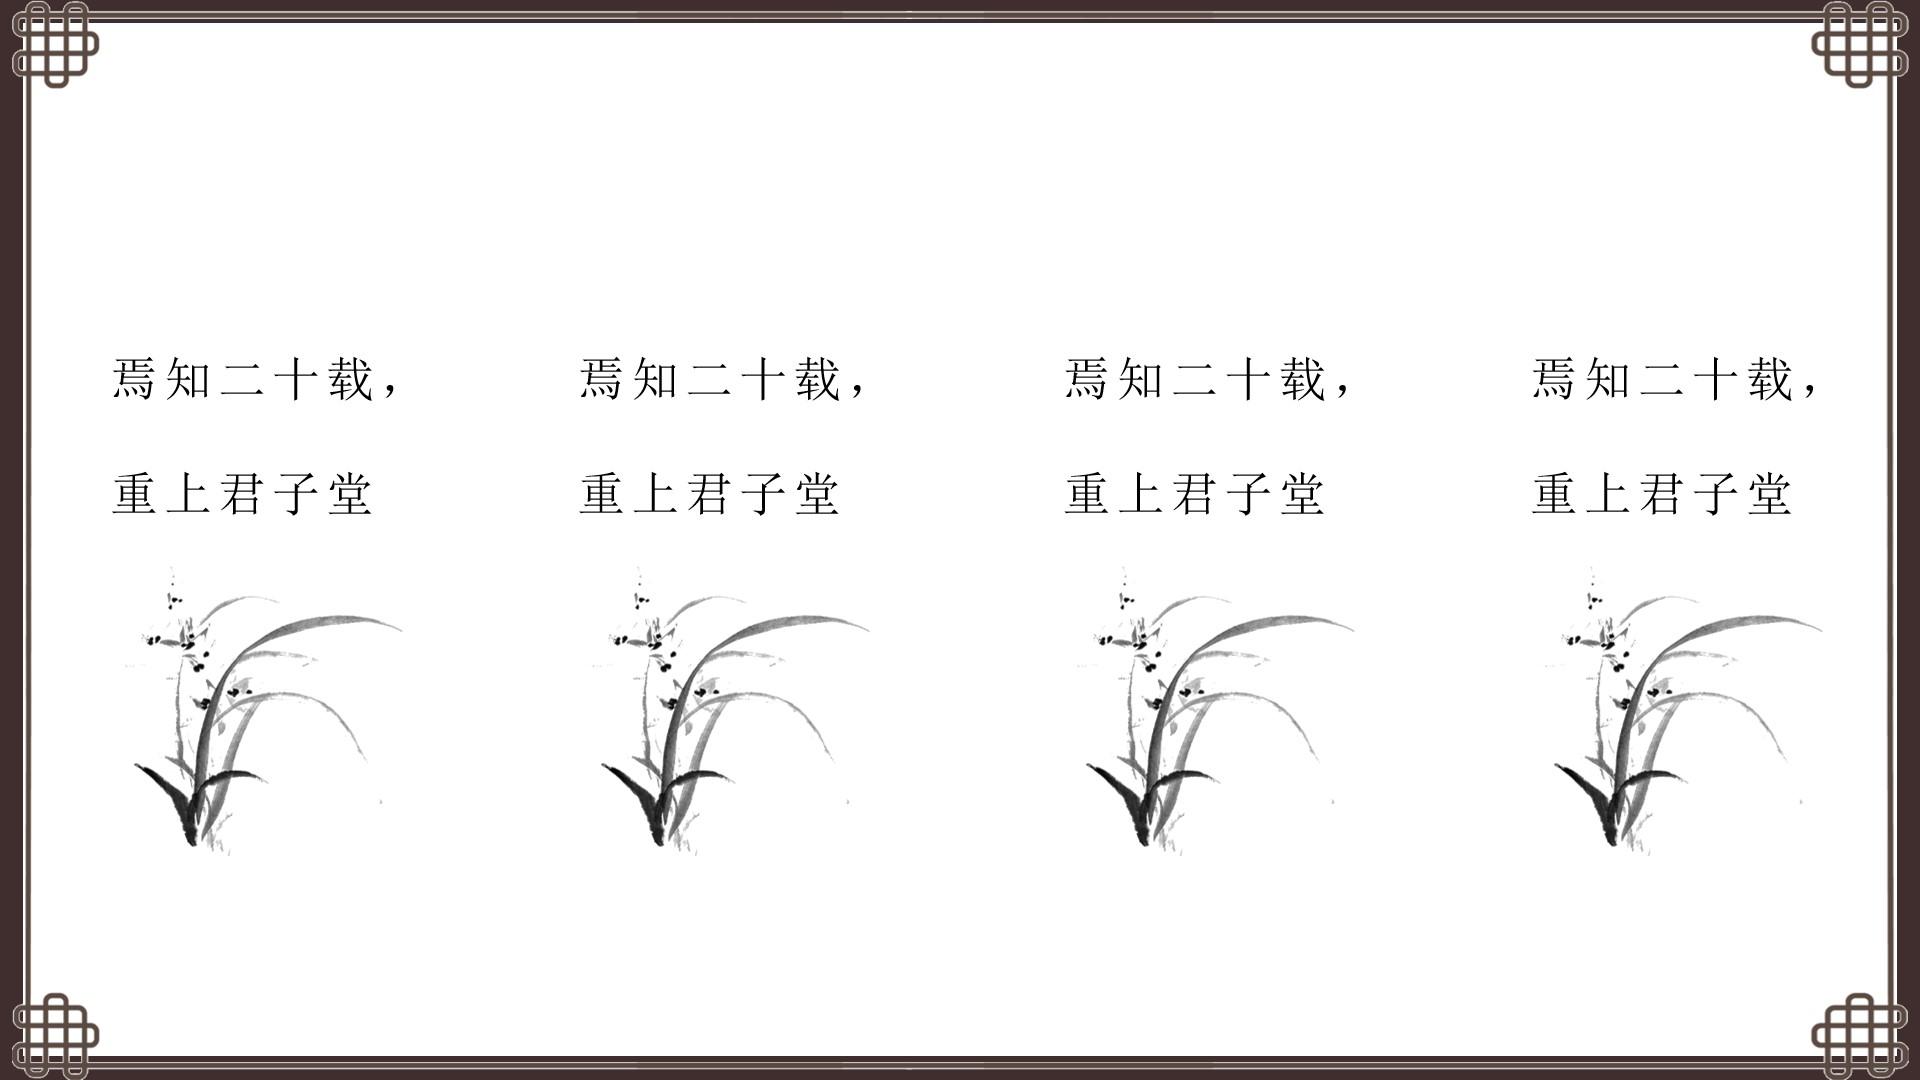 教育教学黑色灰色白色简洁中国风君子云素材PPT模板1672580290327